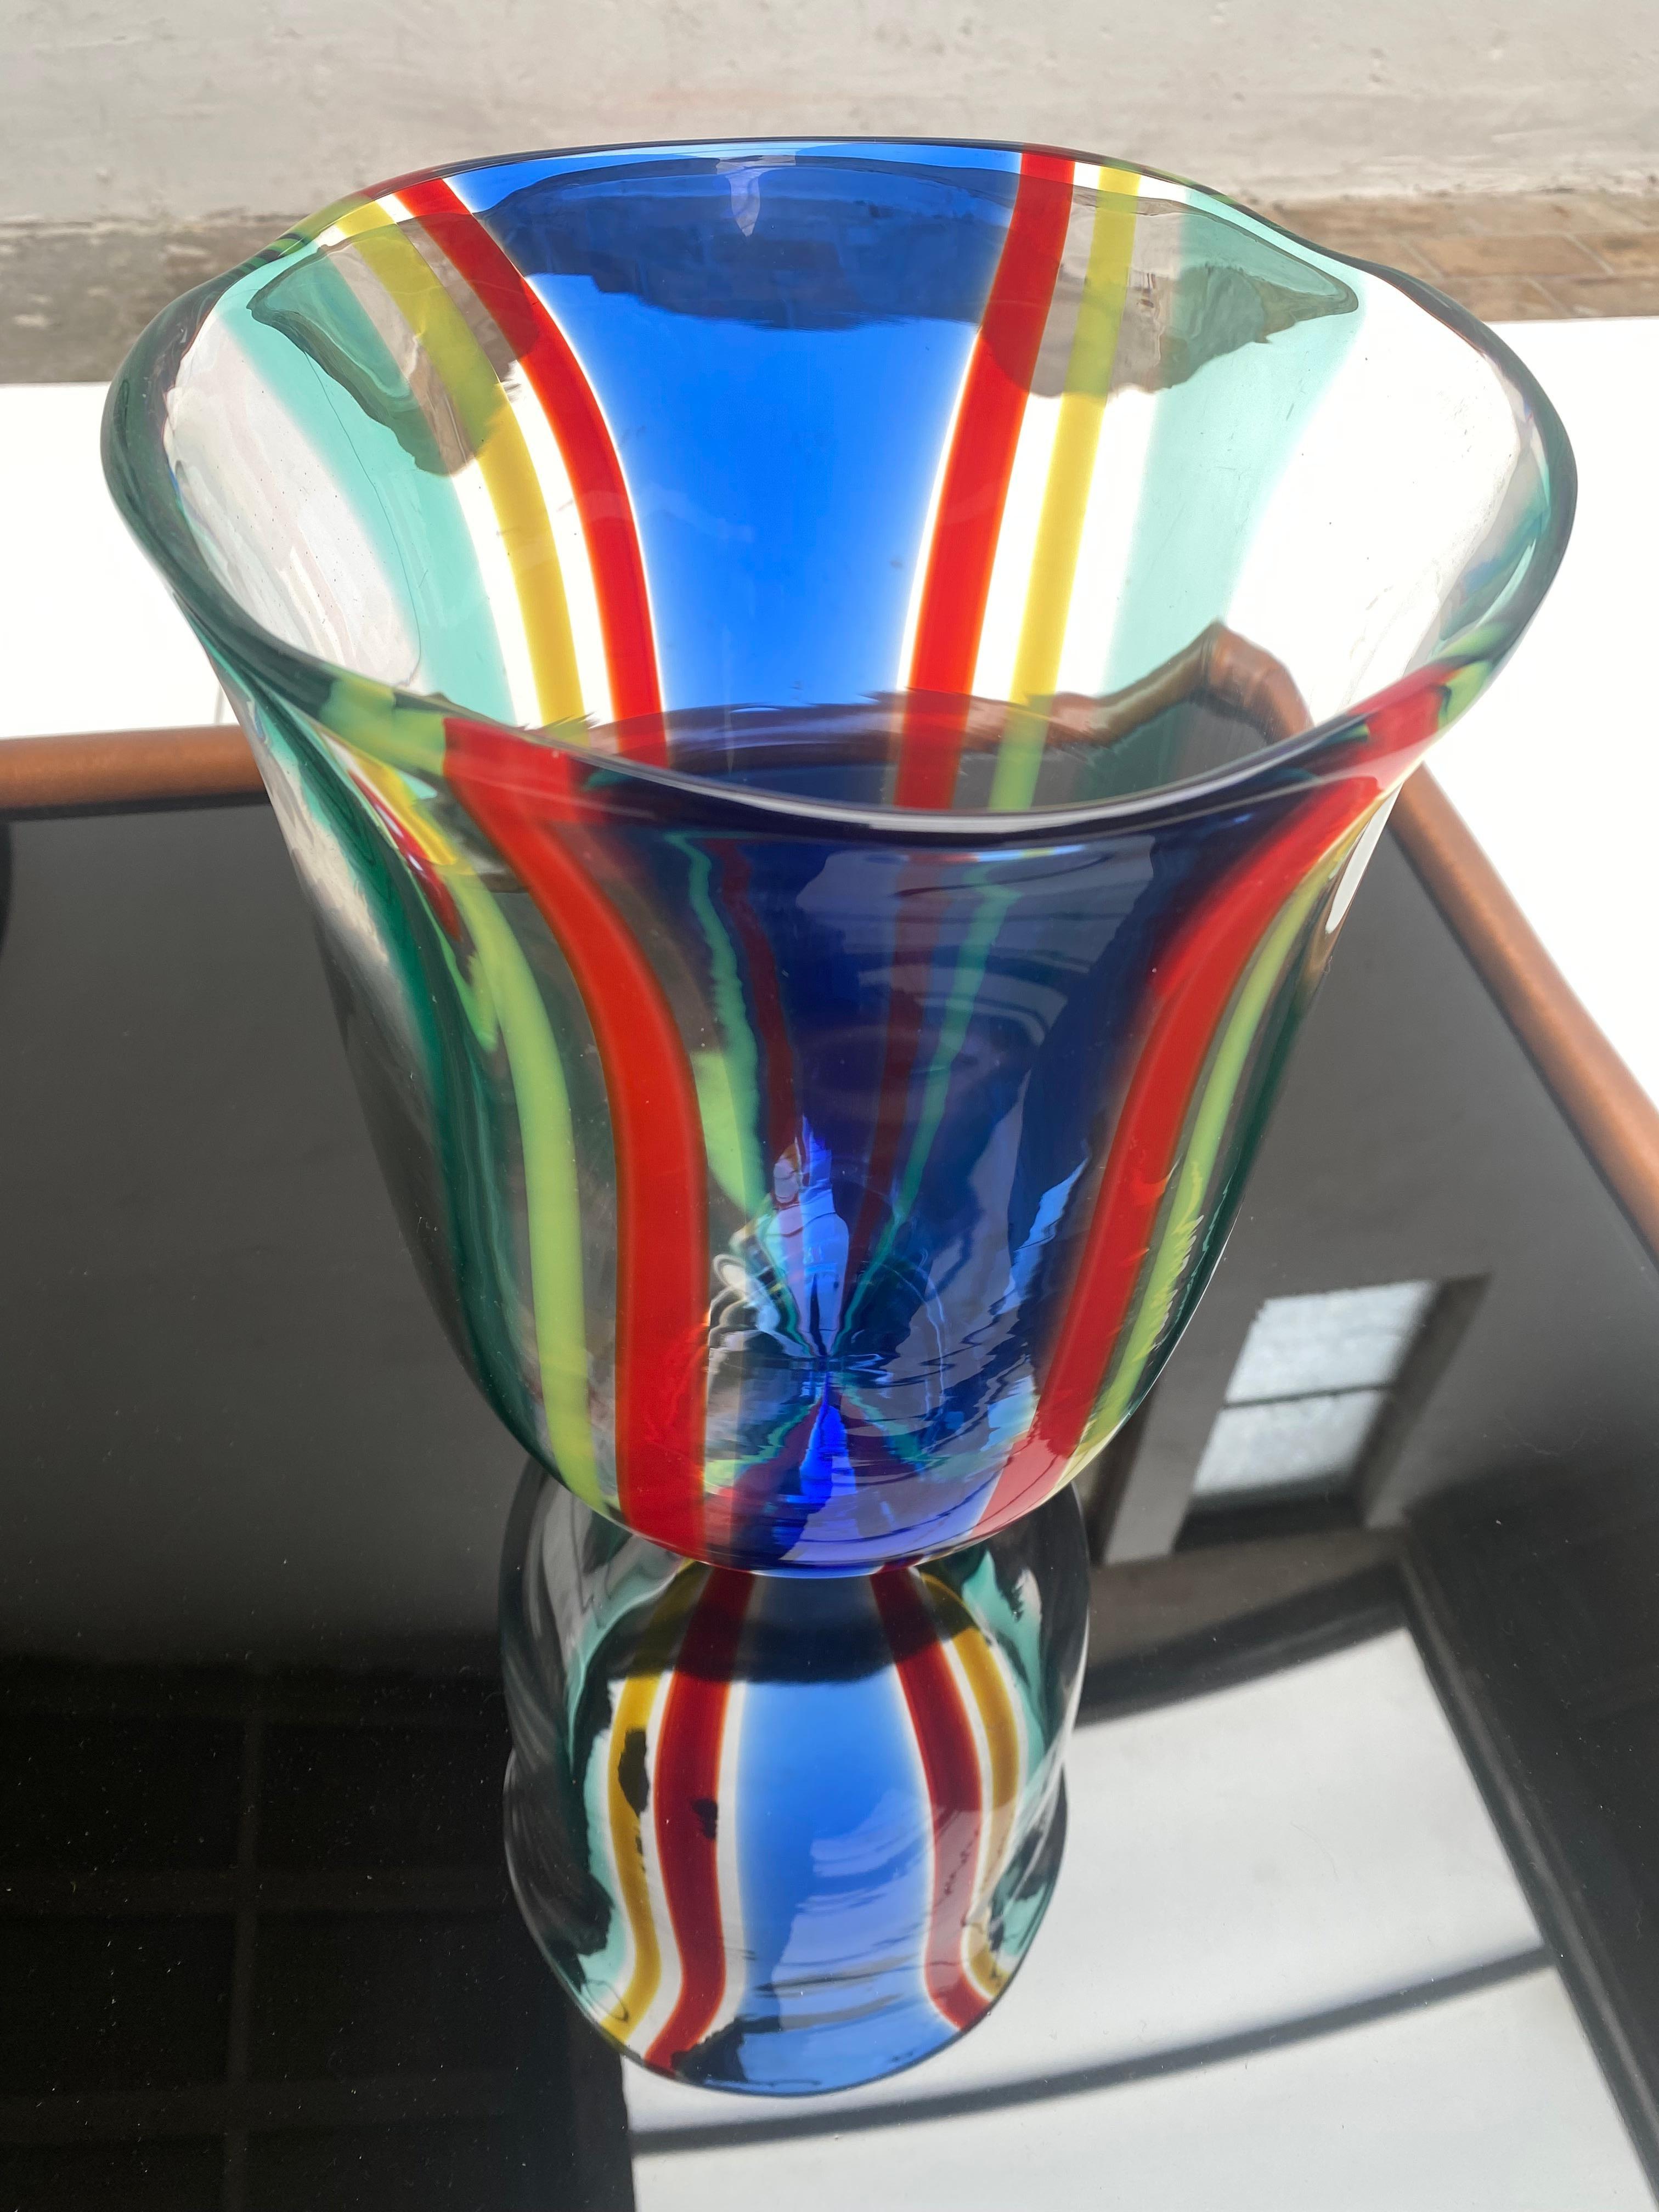 Grand vase 'Camille' en verre de Murano par Berit Johansson pour Salviati Italie 1991

Ce vase Condit est livré en parfait état dans son emballage d'origine. 

Gravé sur la face inférieure : 